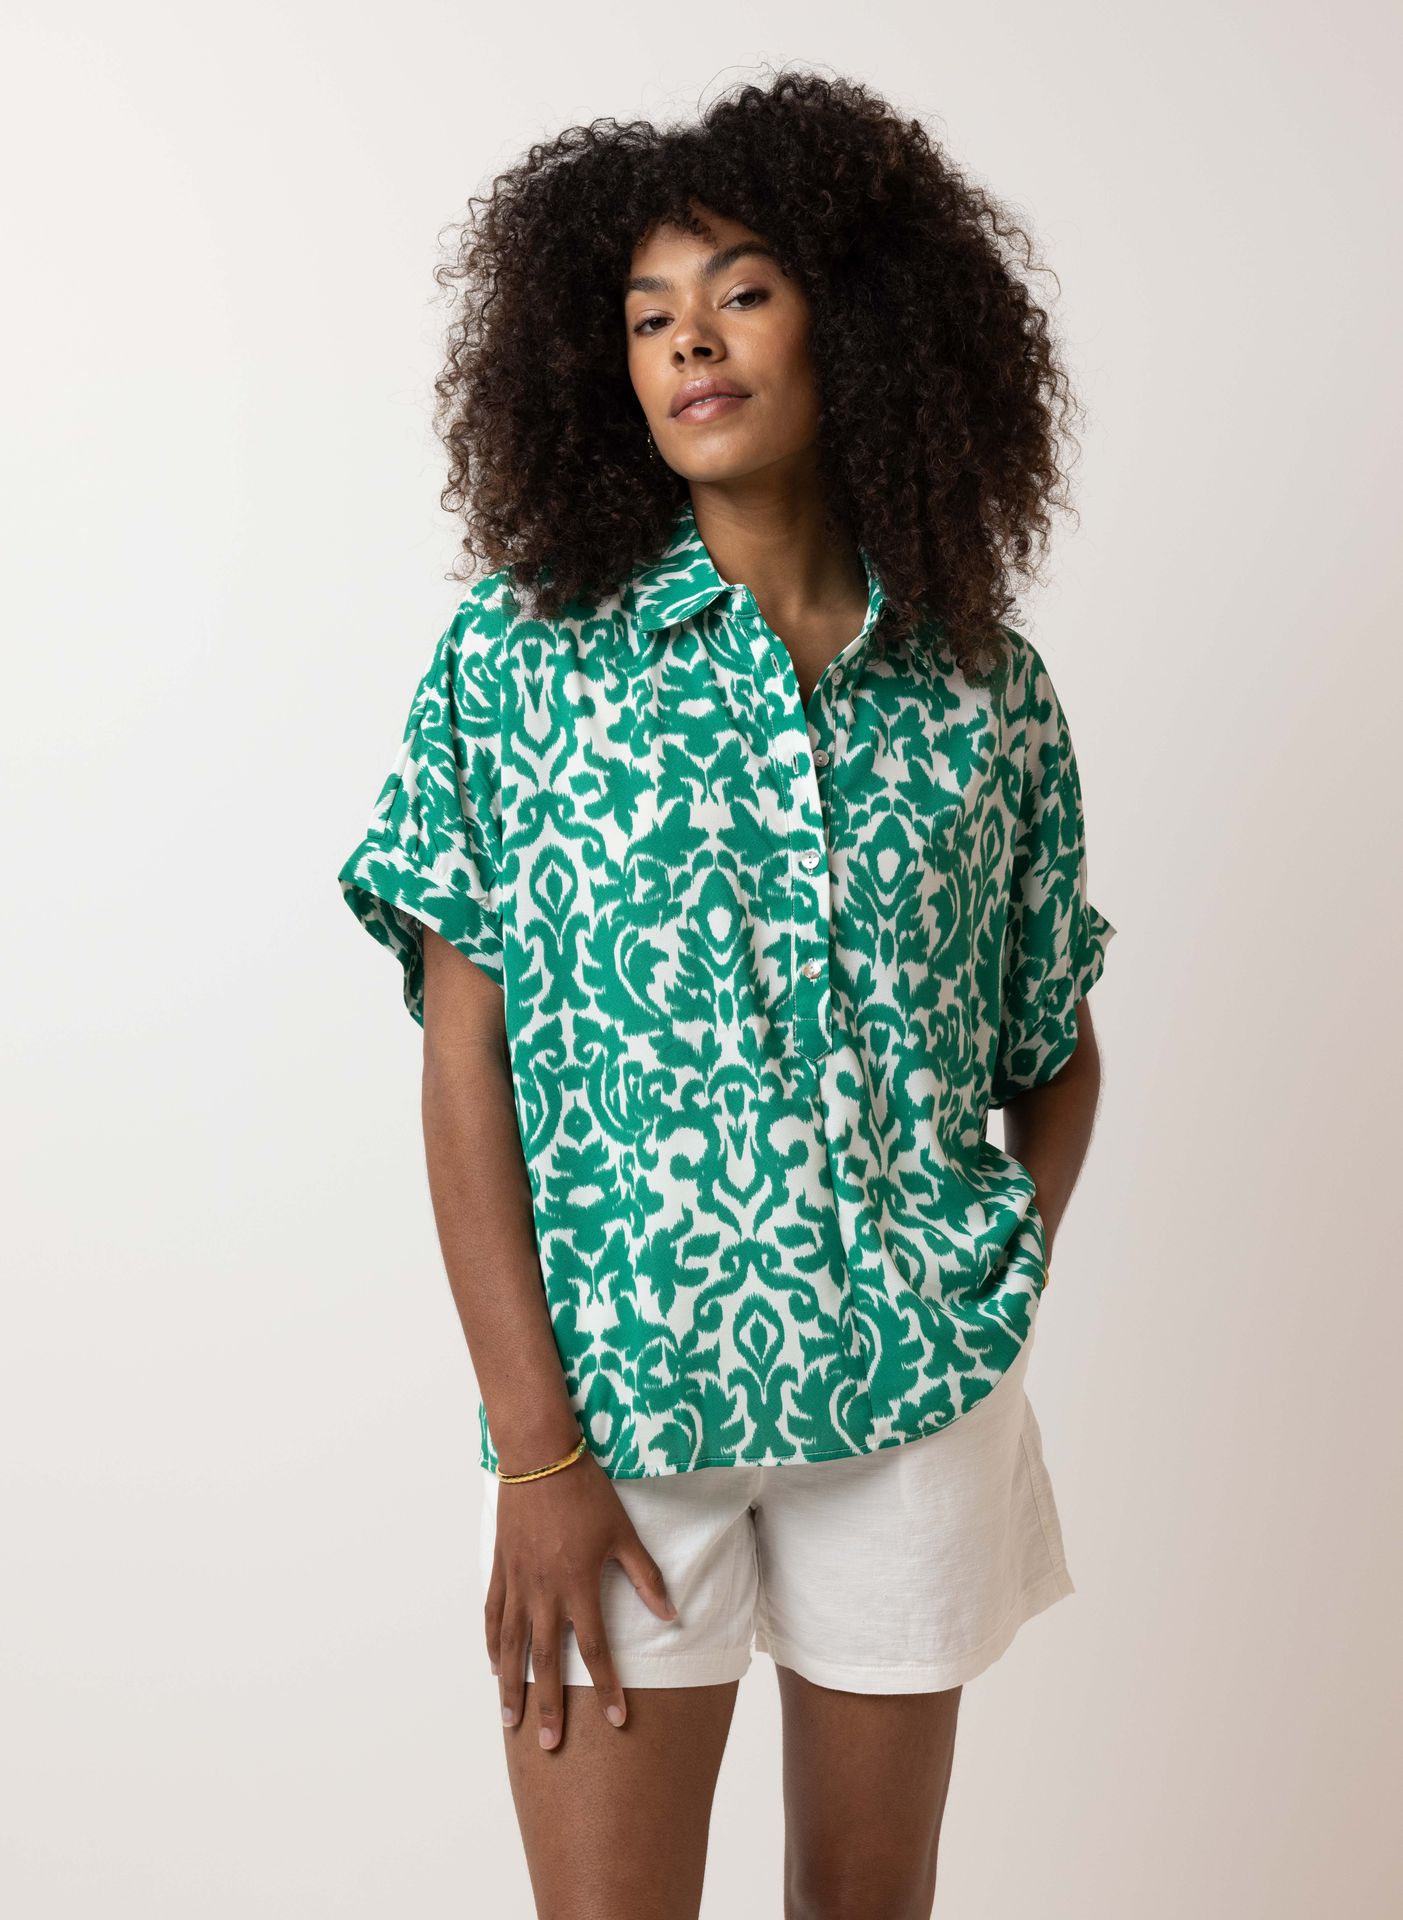 Norah Groene blouse green/ecru 213818-541